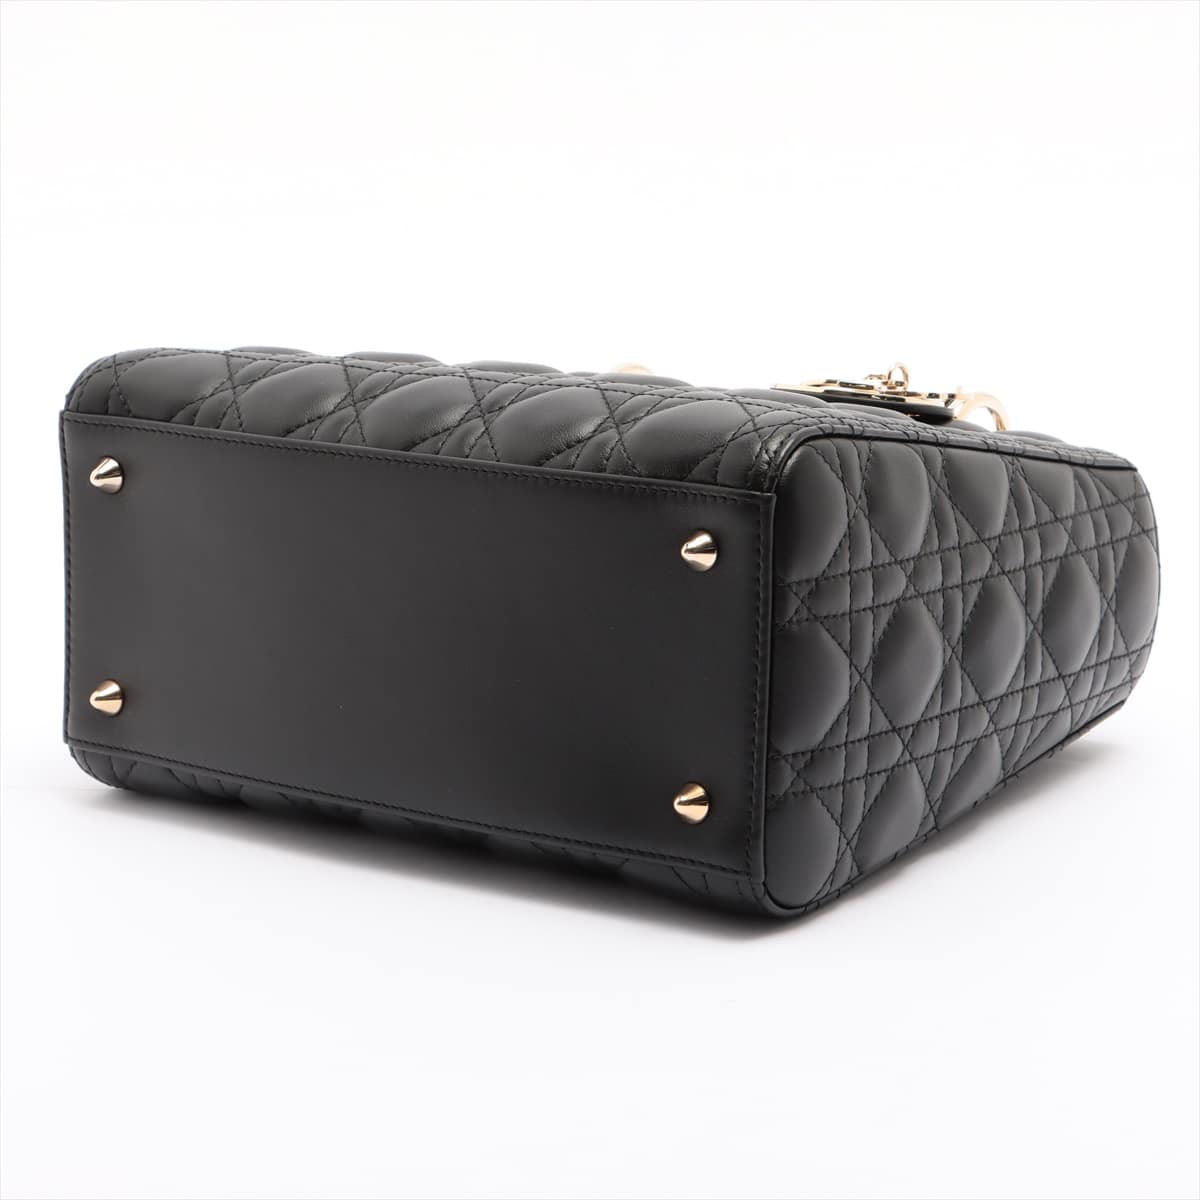 Christian Dior Lady Dior Cannage Leather 2way handbag Black